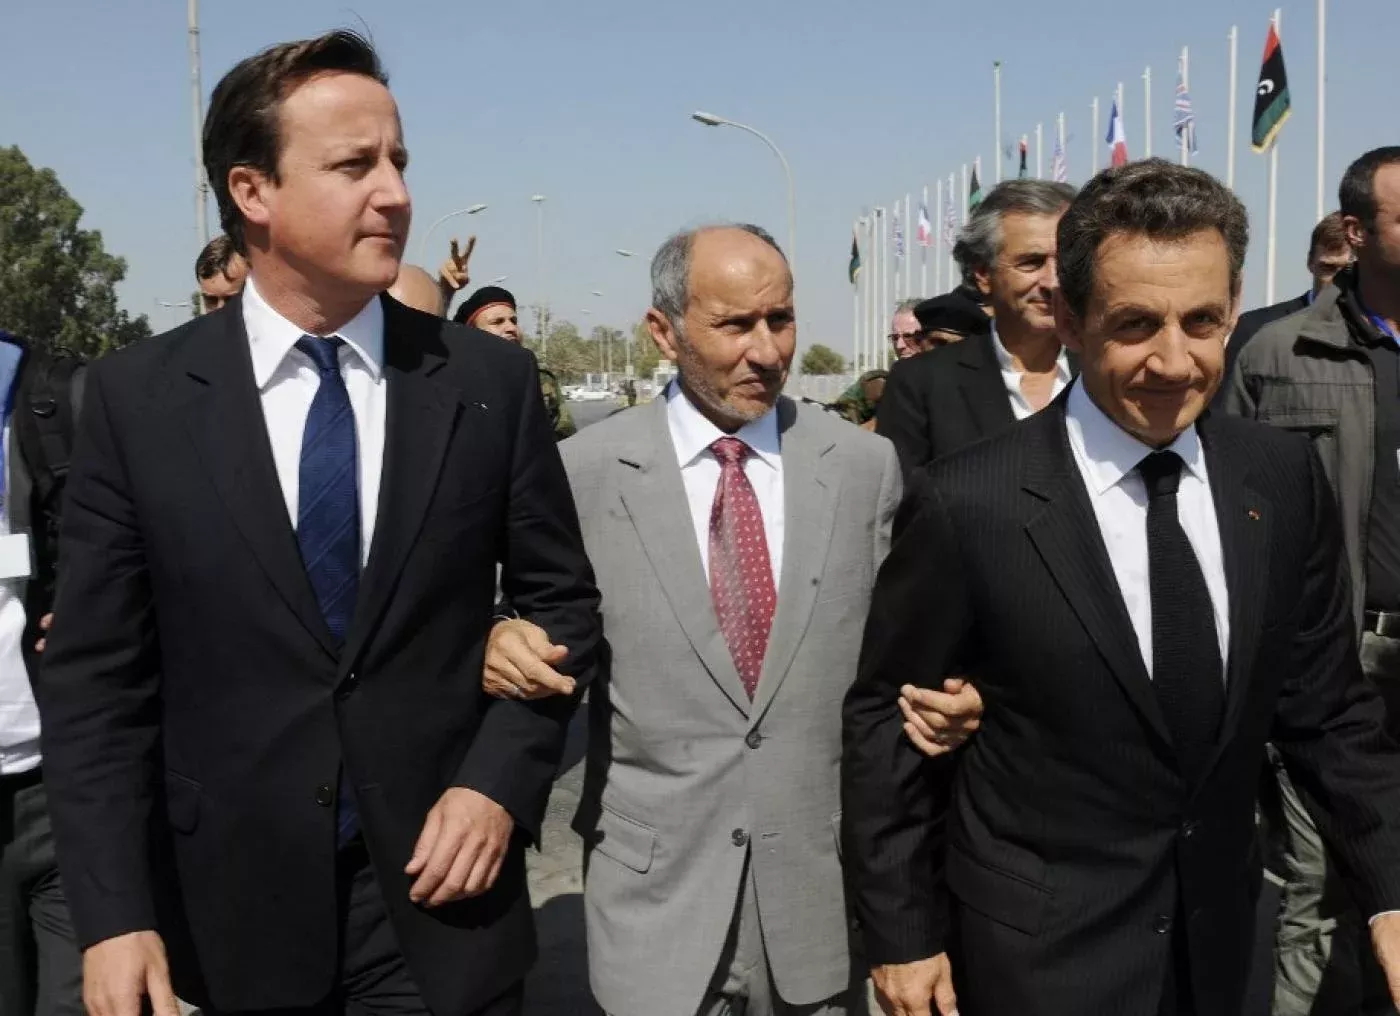 Le Premier ministre britannique David Cameron (à gauche) et le président français Nicolas Sarkozy (à droite) avec le président du Conseil national de transition Moustapha Abdel Jalil à Tripoli en Libye, le 15 septembre 2011 (AFP)